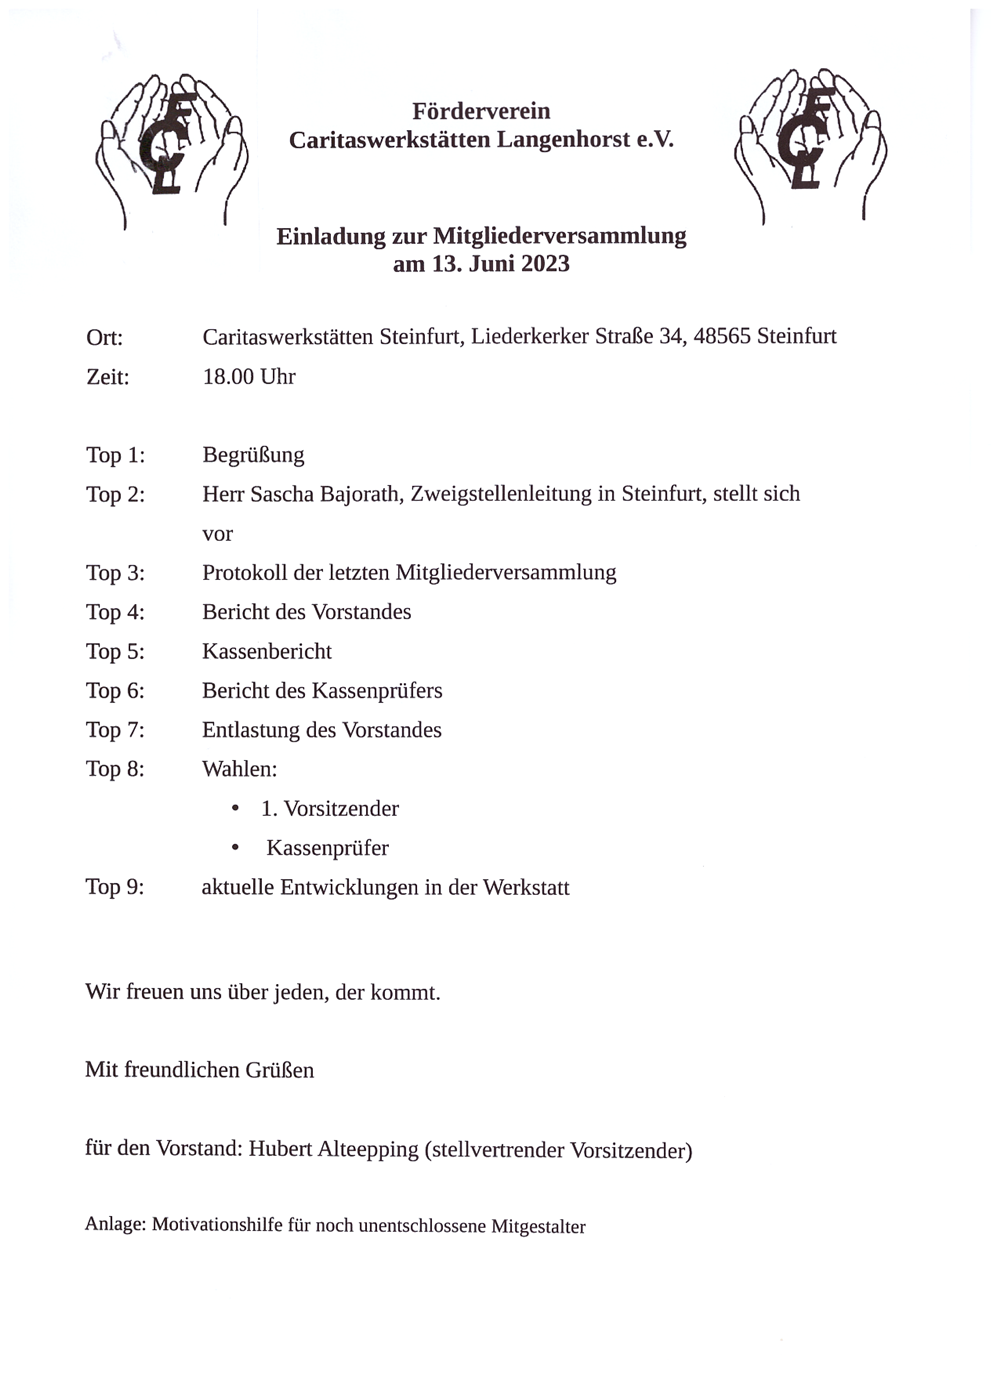 Einladung zur Mitgliederversammlung am 13.06.2023 Förderverein Caritaswerkstätten Langenhorst e.V.